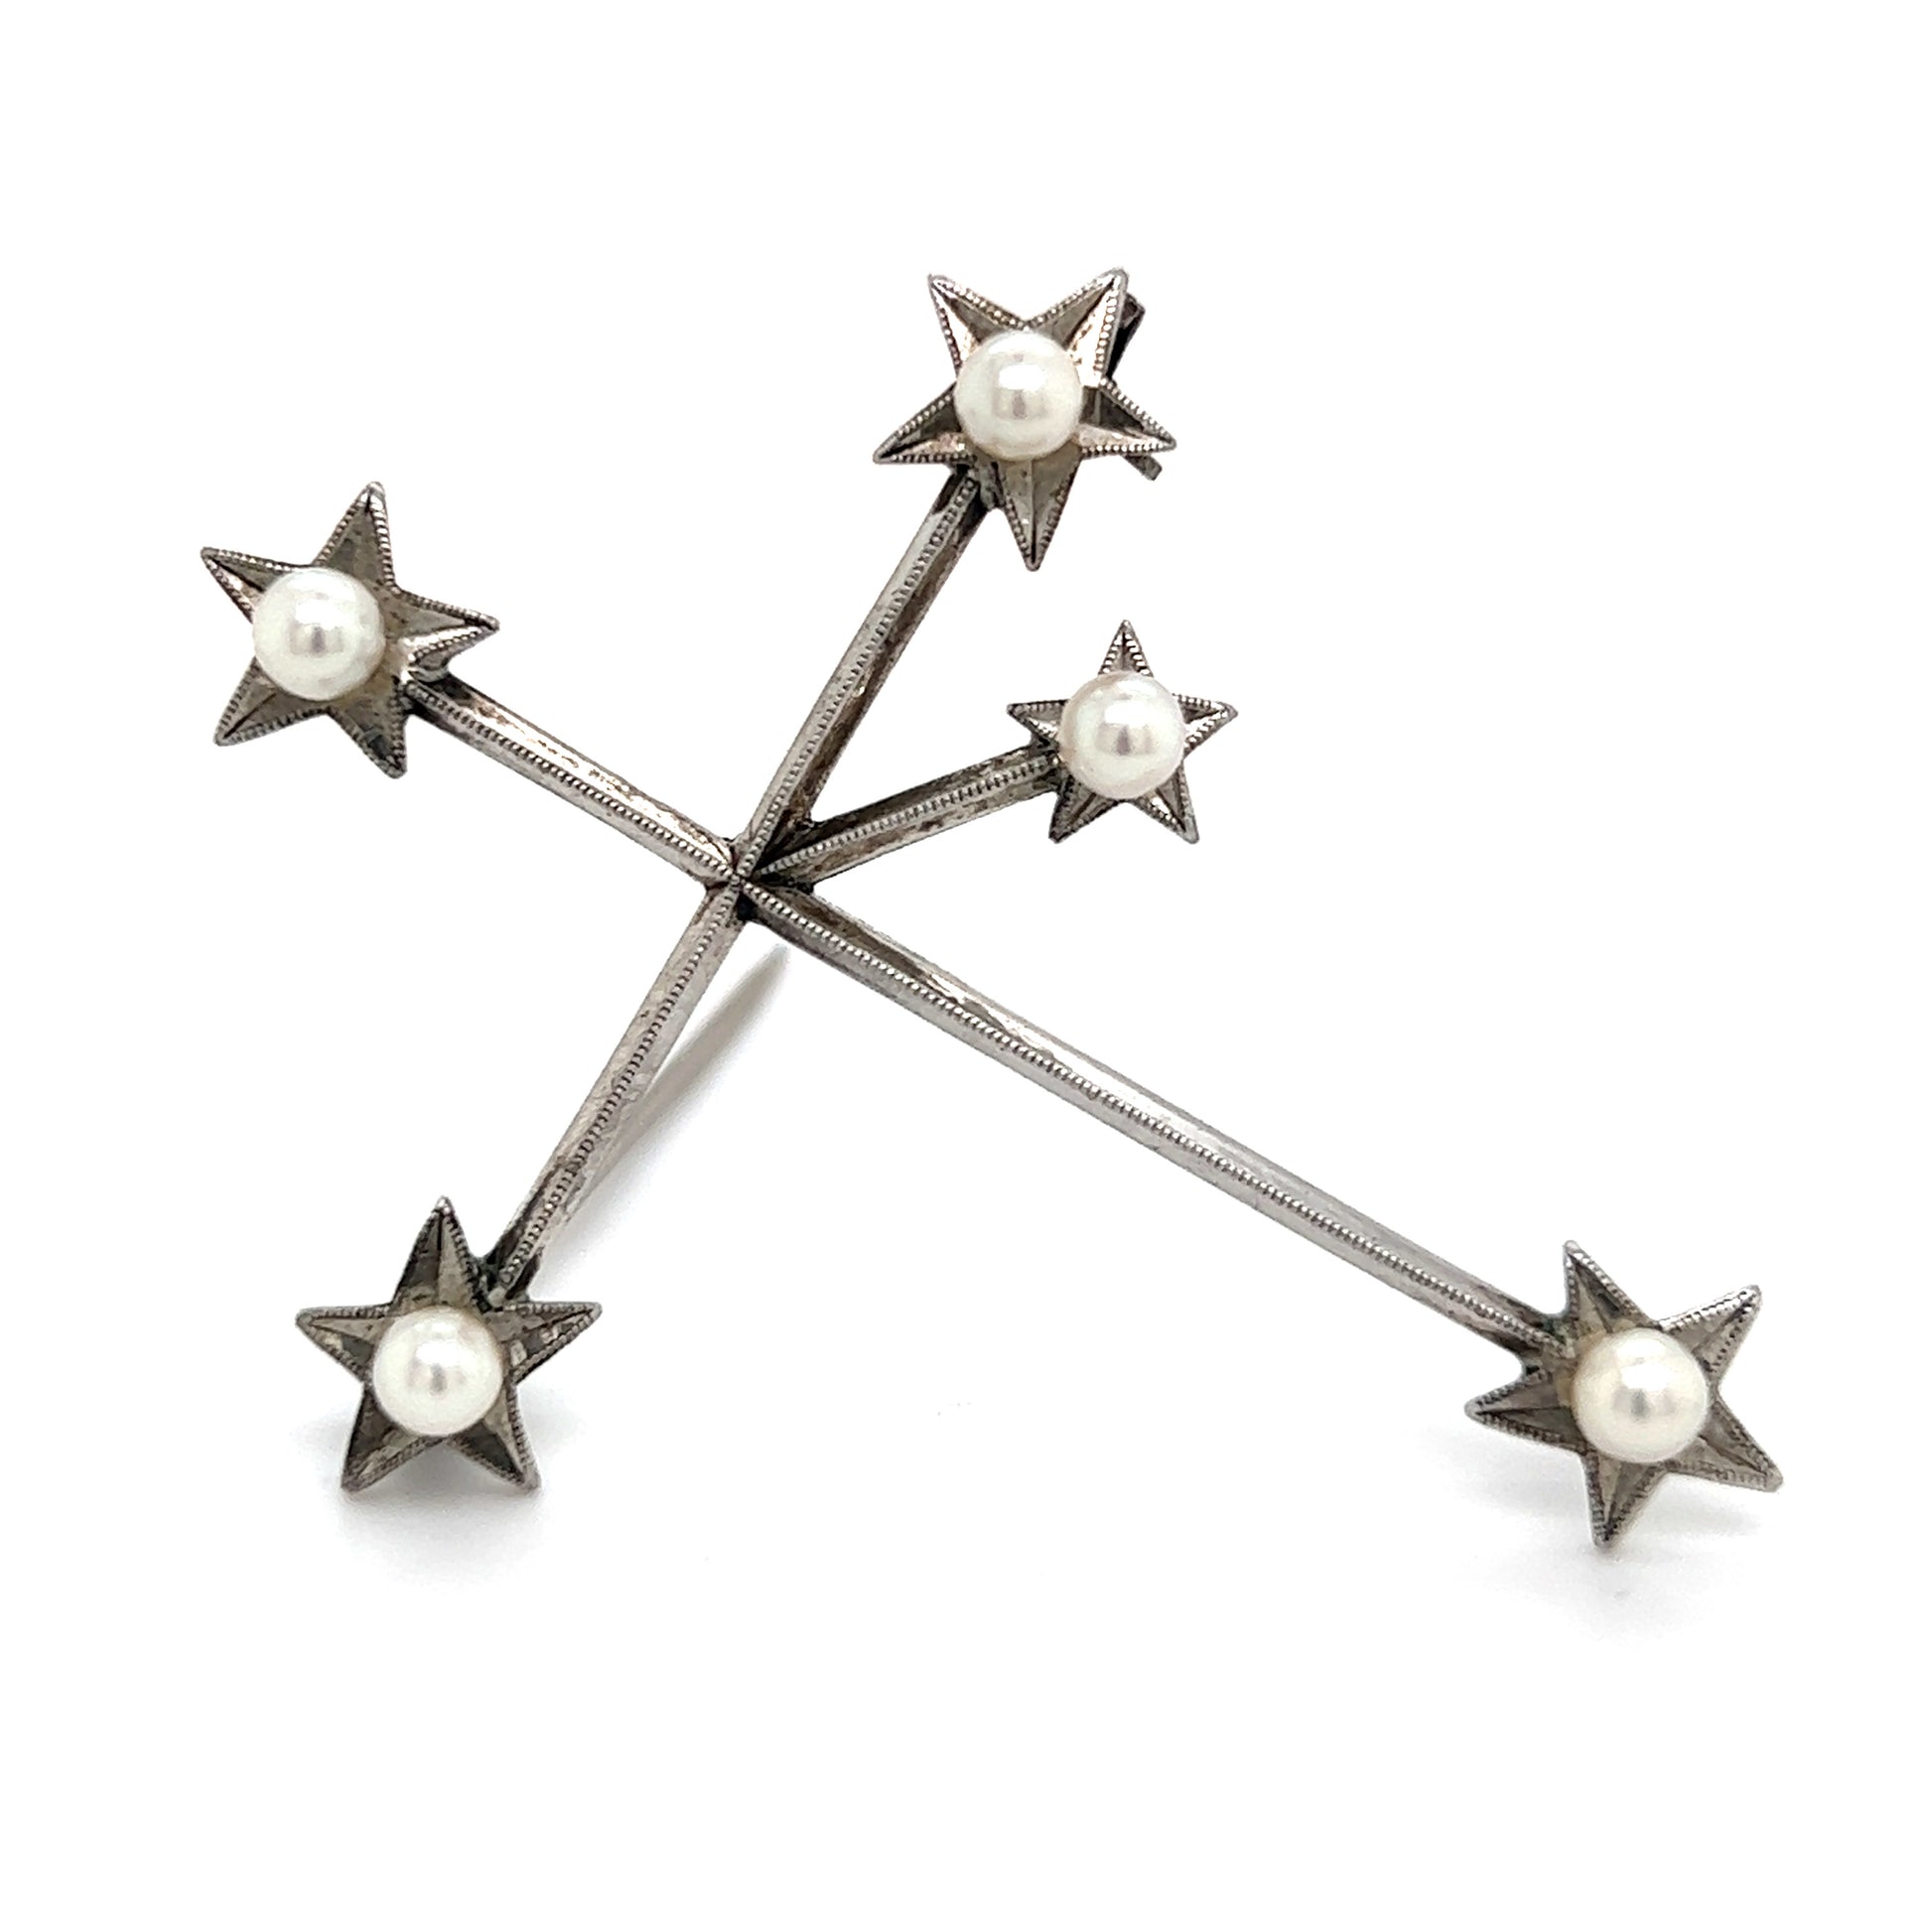 Mikimoto Estate Akoya Pearl Cross Brooch Sterling Silver 4 mm M320 - Certified Fine Jewelry